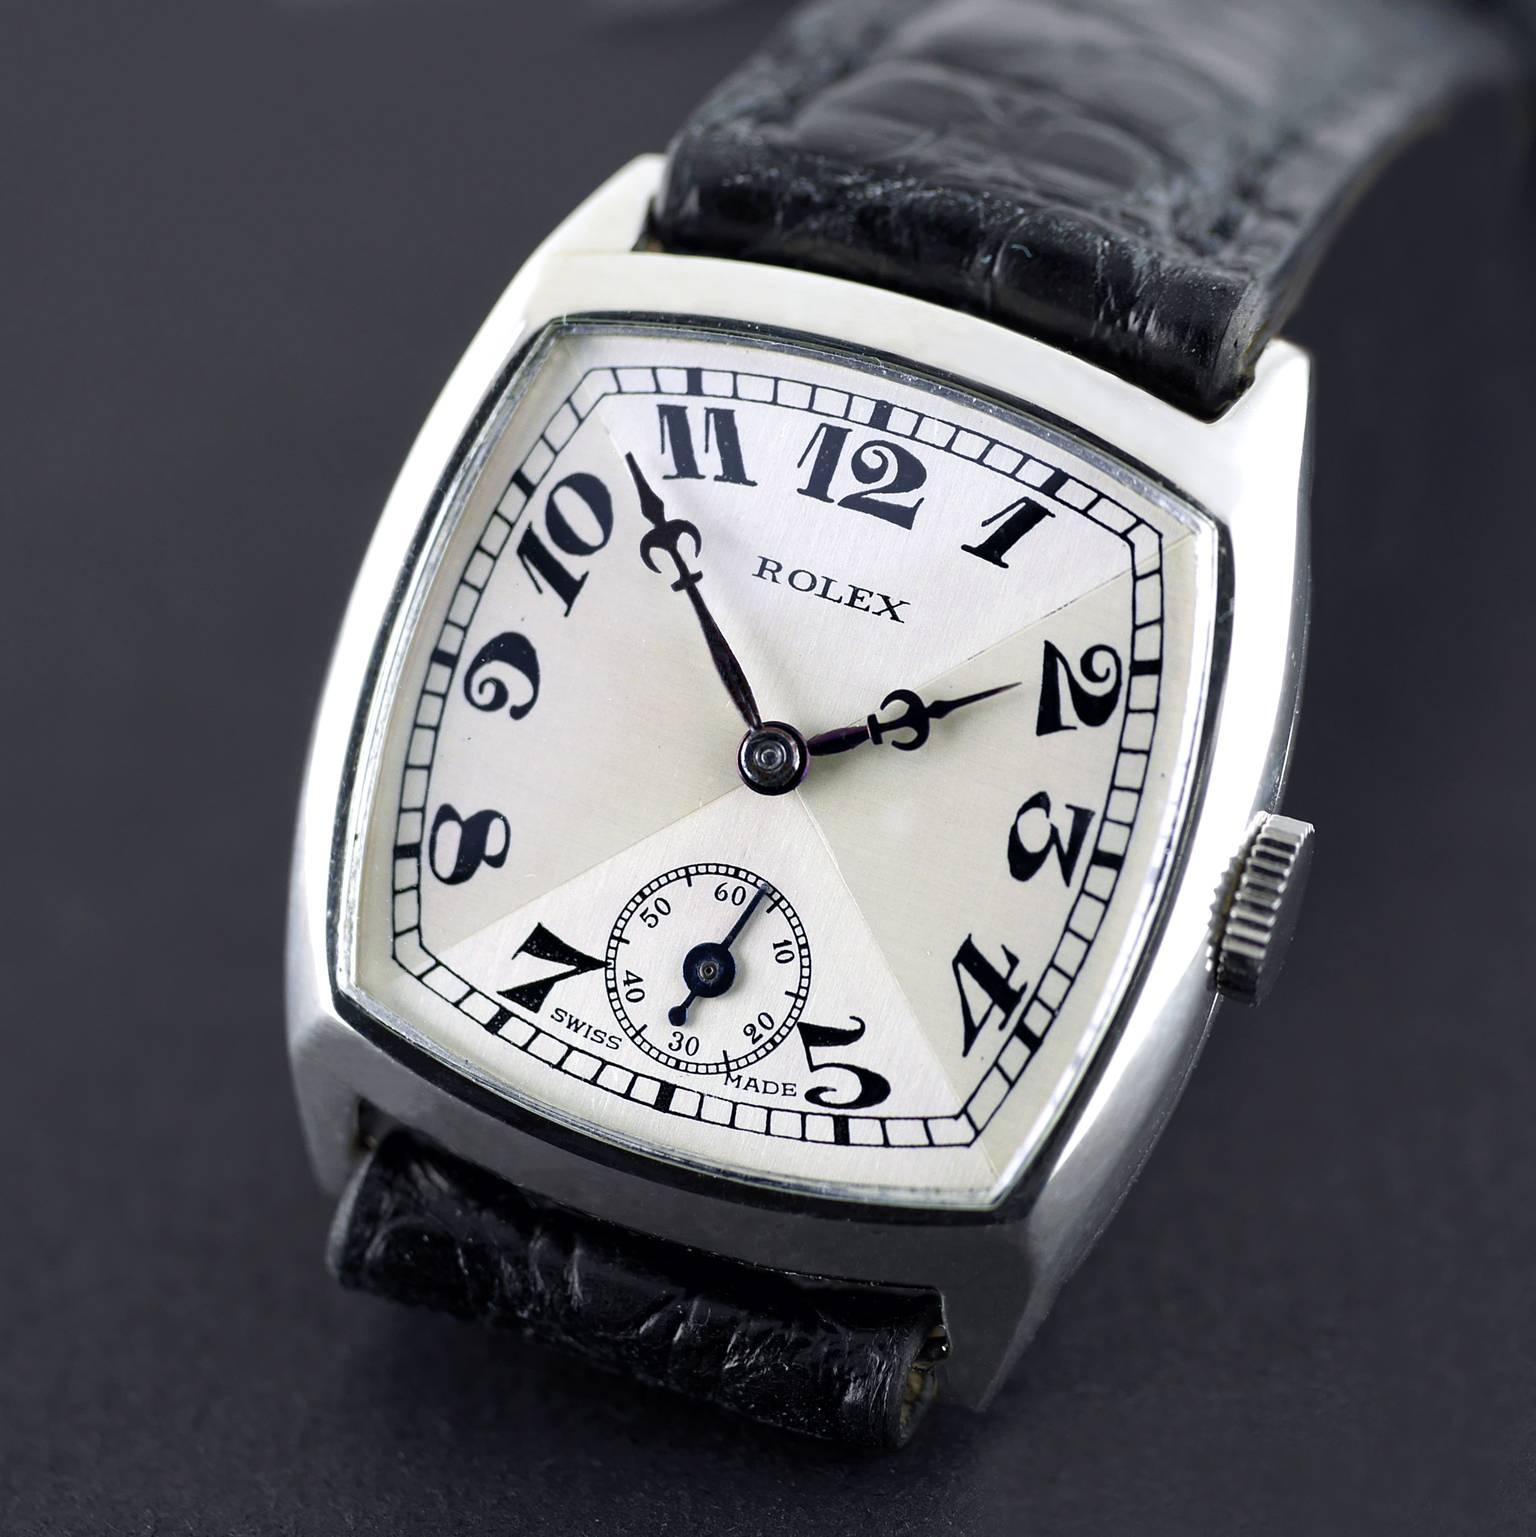 sterling silver wrist watch